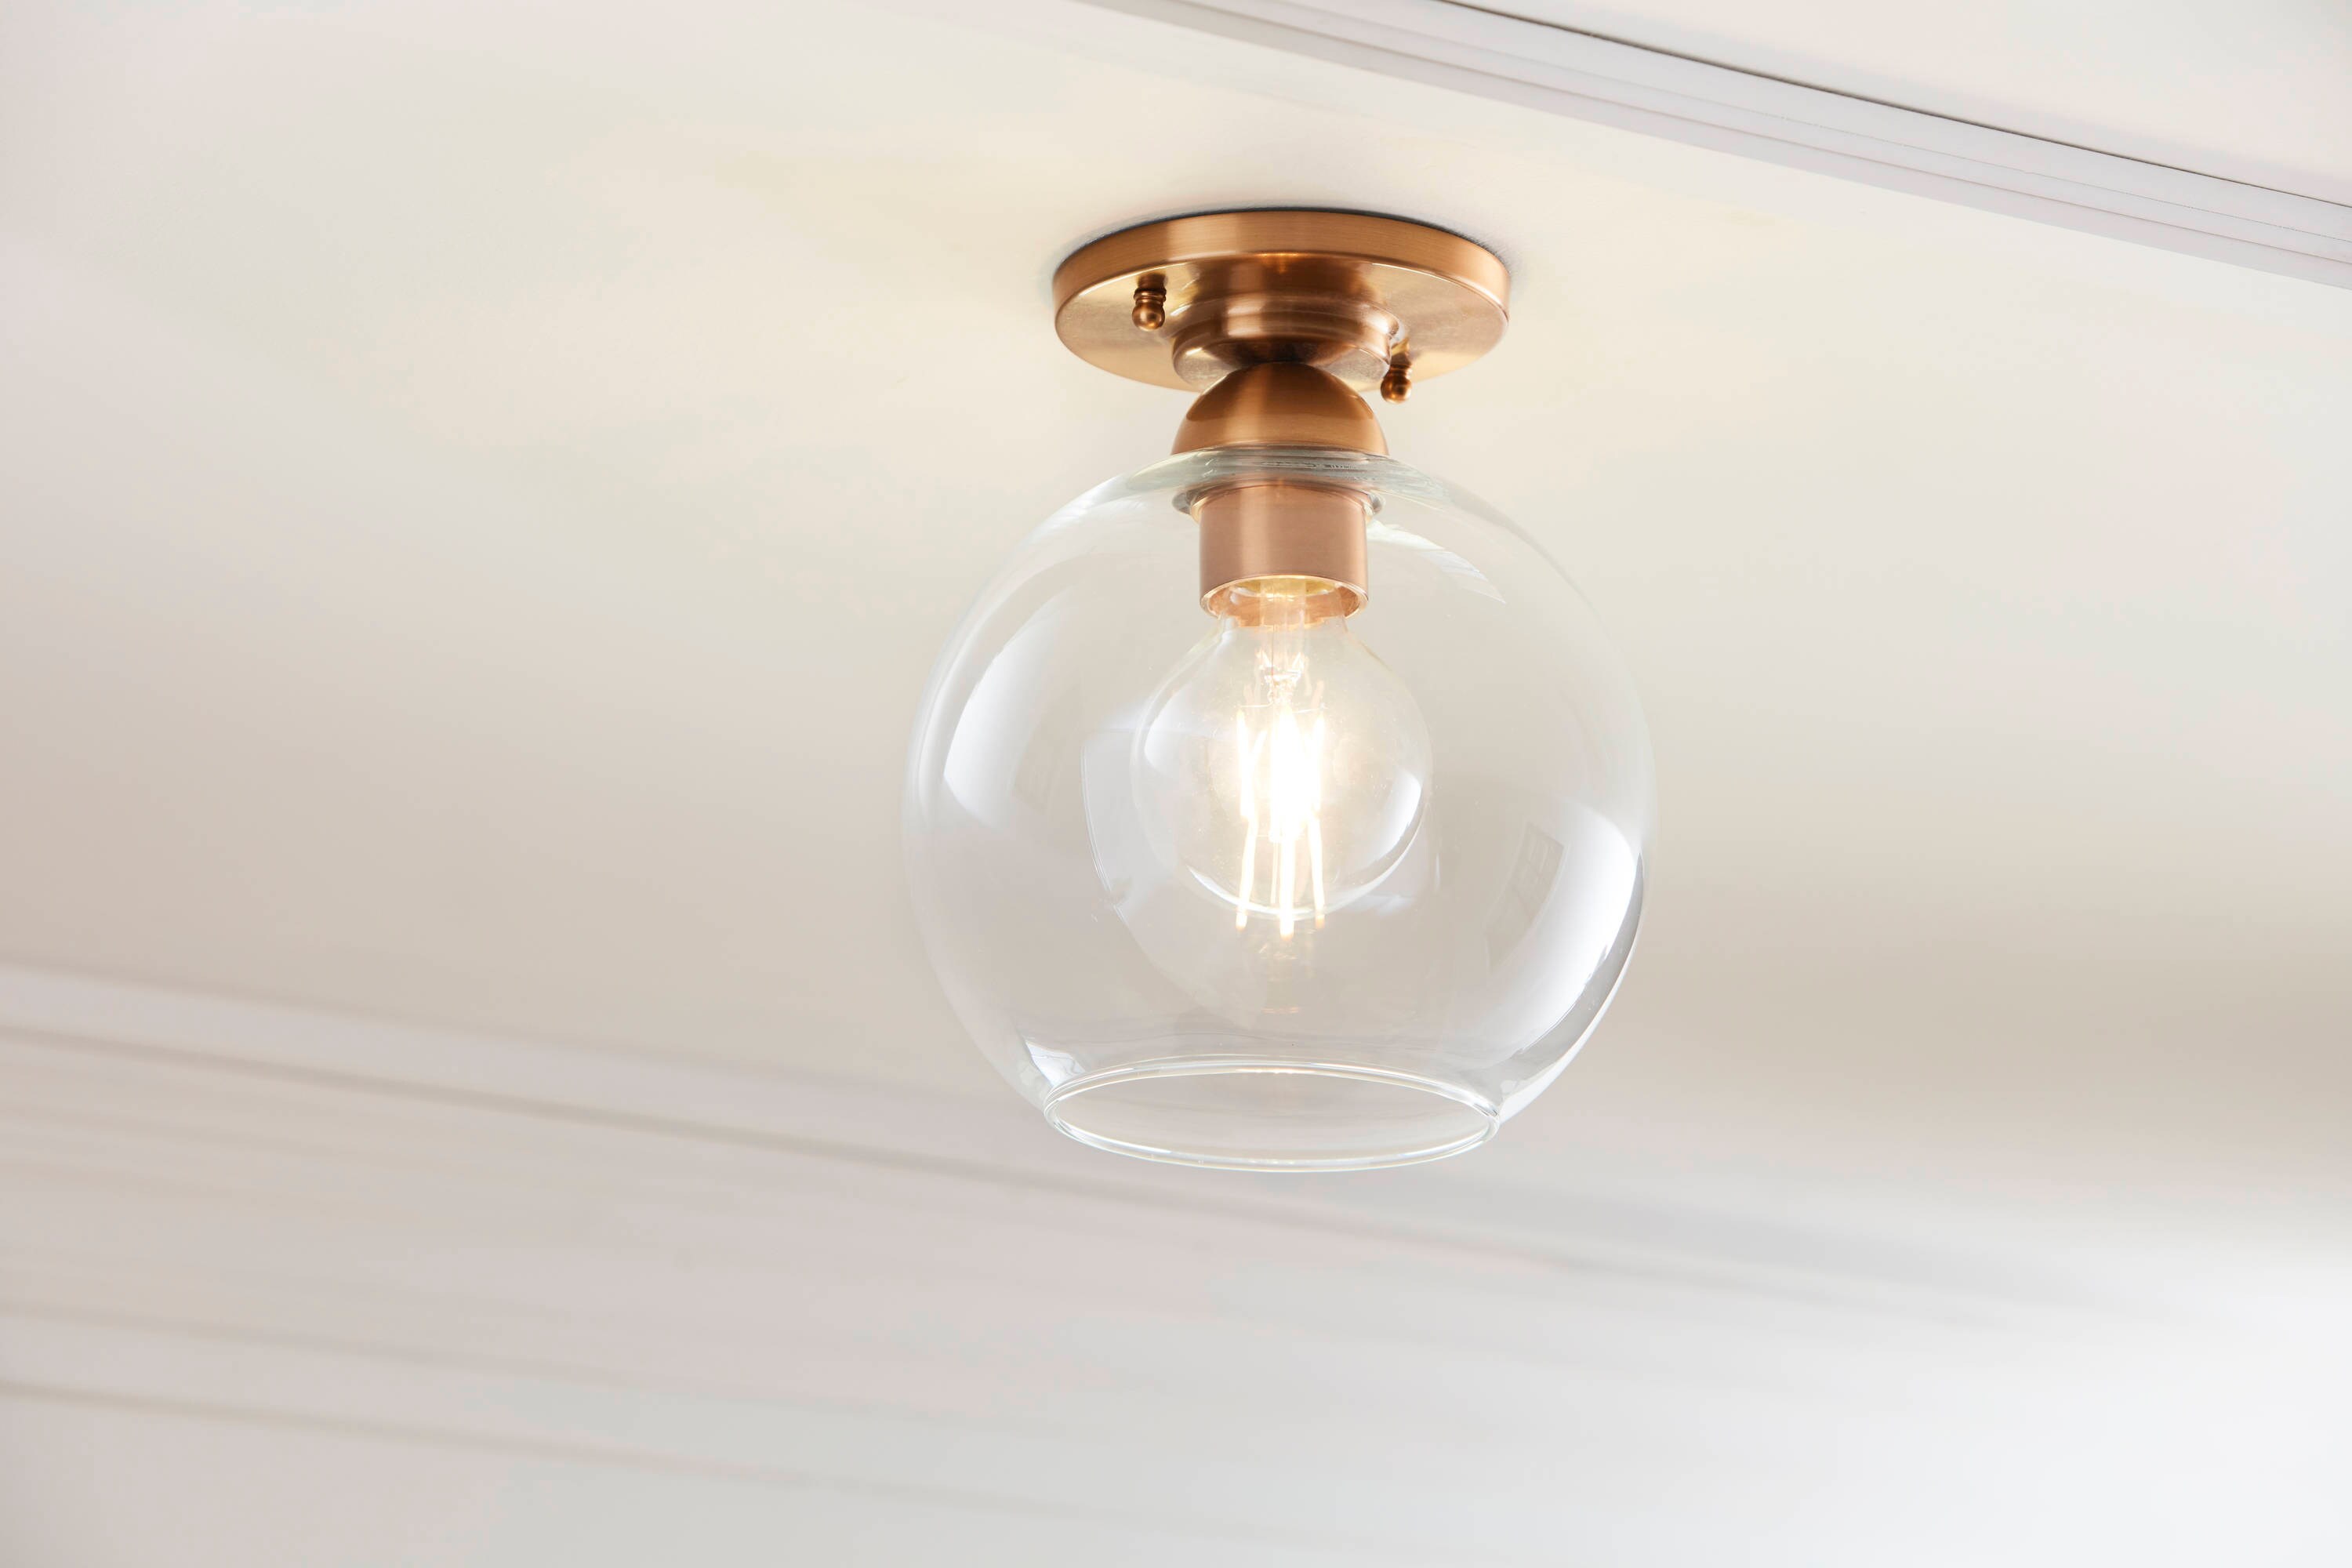 BAYCHEER HL399367 12” Diamond Star Shape Flush Mount Ceiling Light Hanging Lighting Lamp use E26 CFL Light Bulb for Indoor Lighting Restaurant Barn